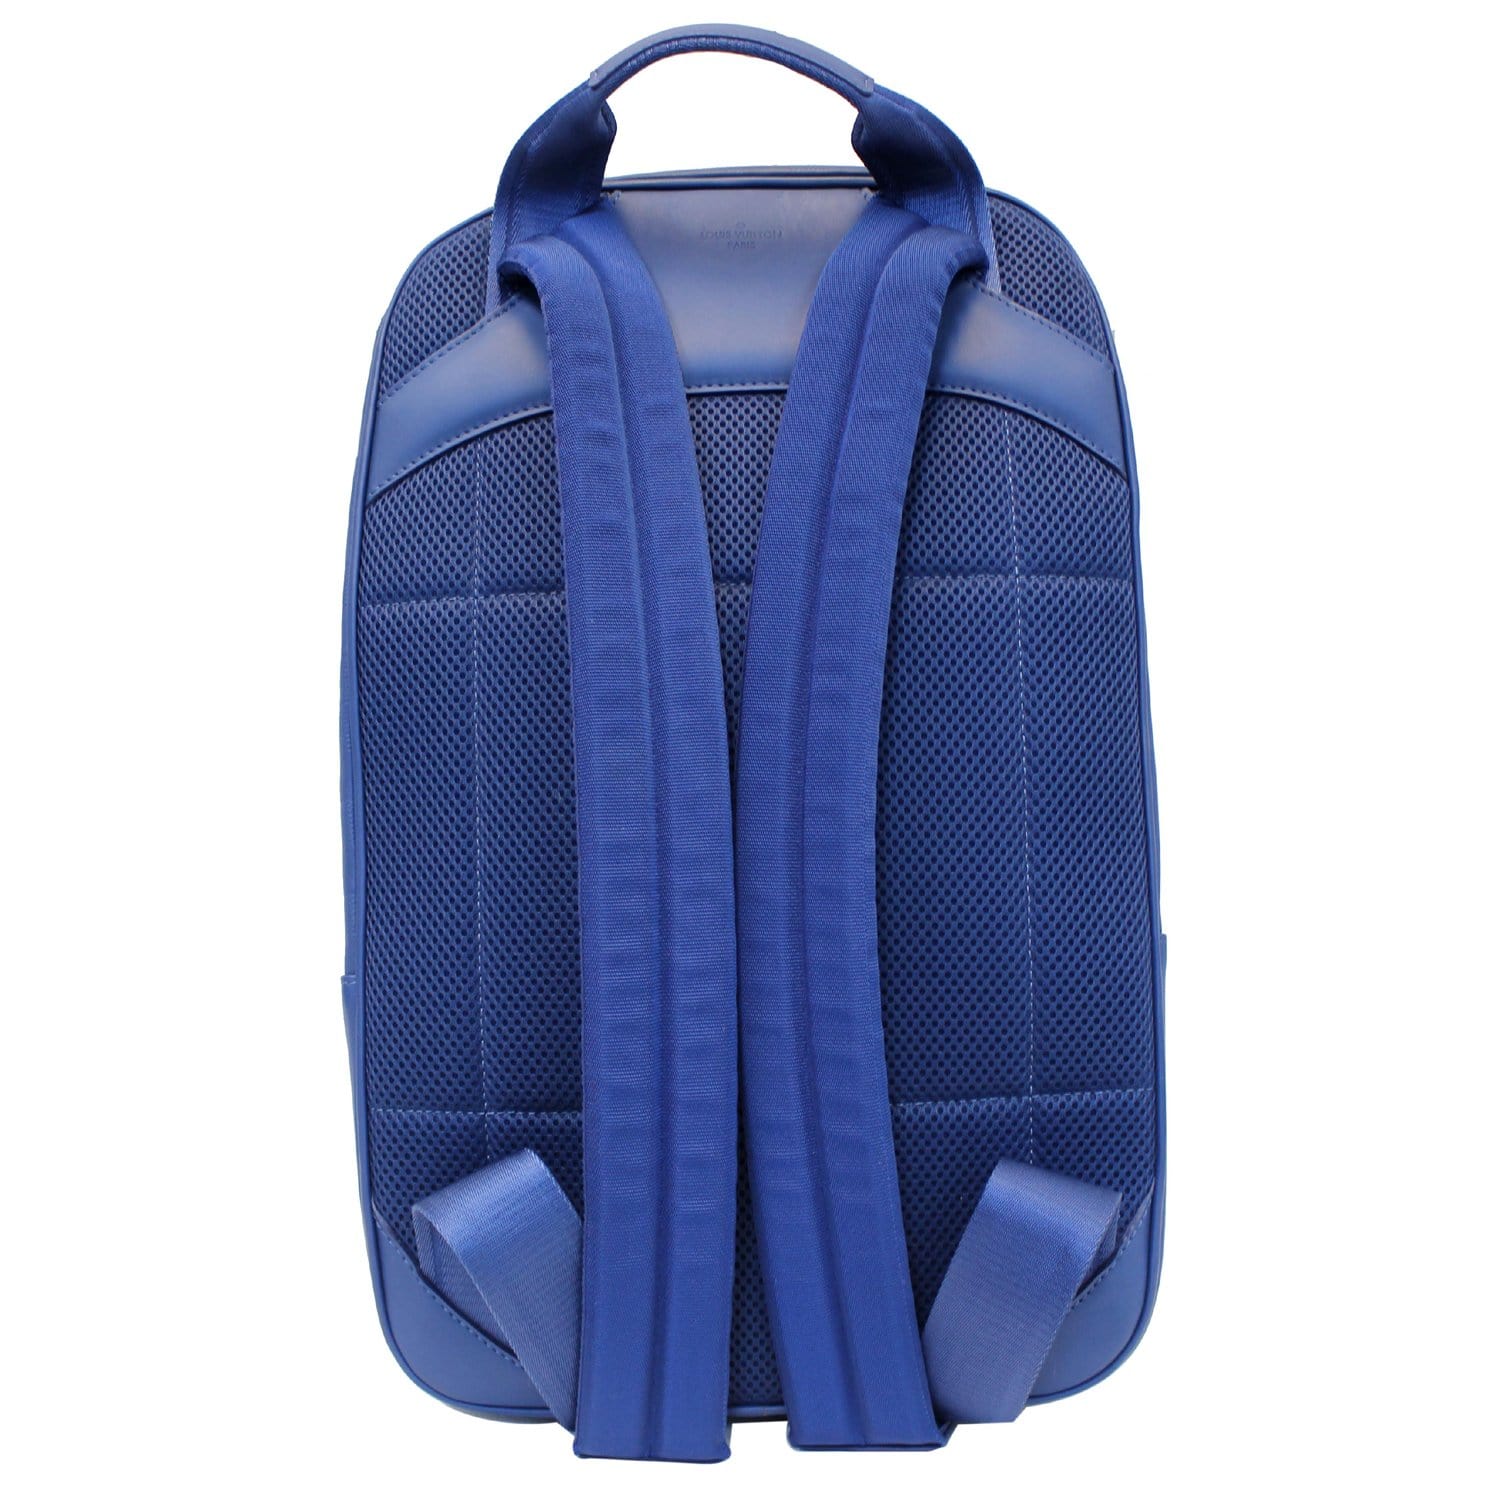 lv backpack blue